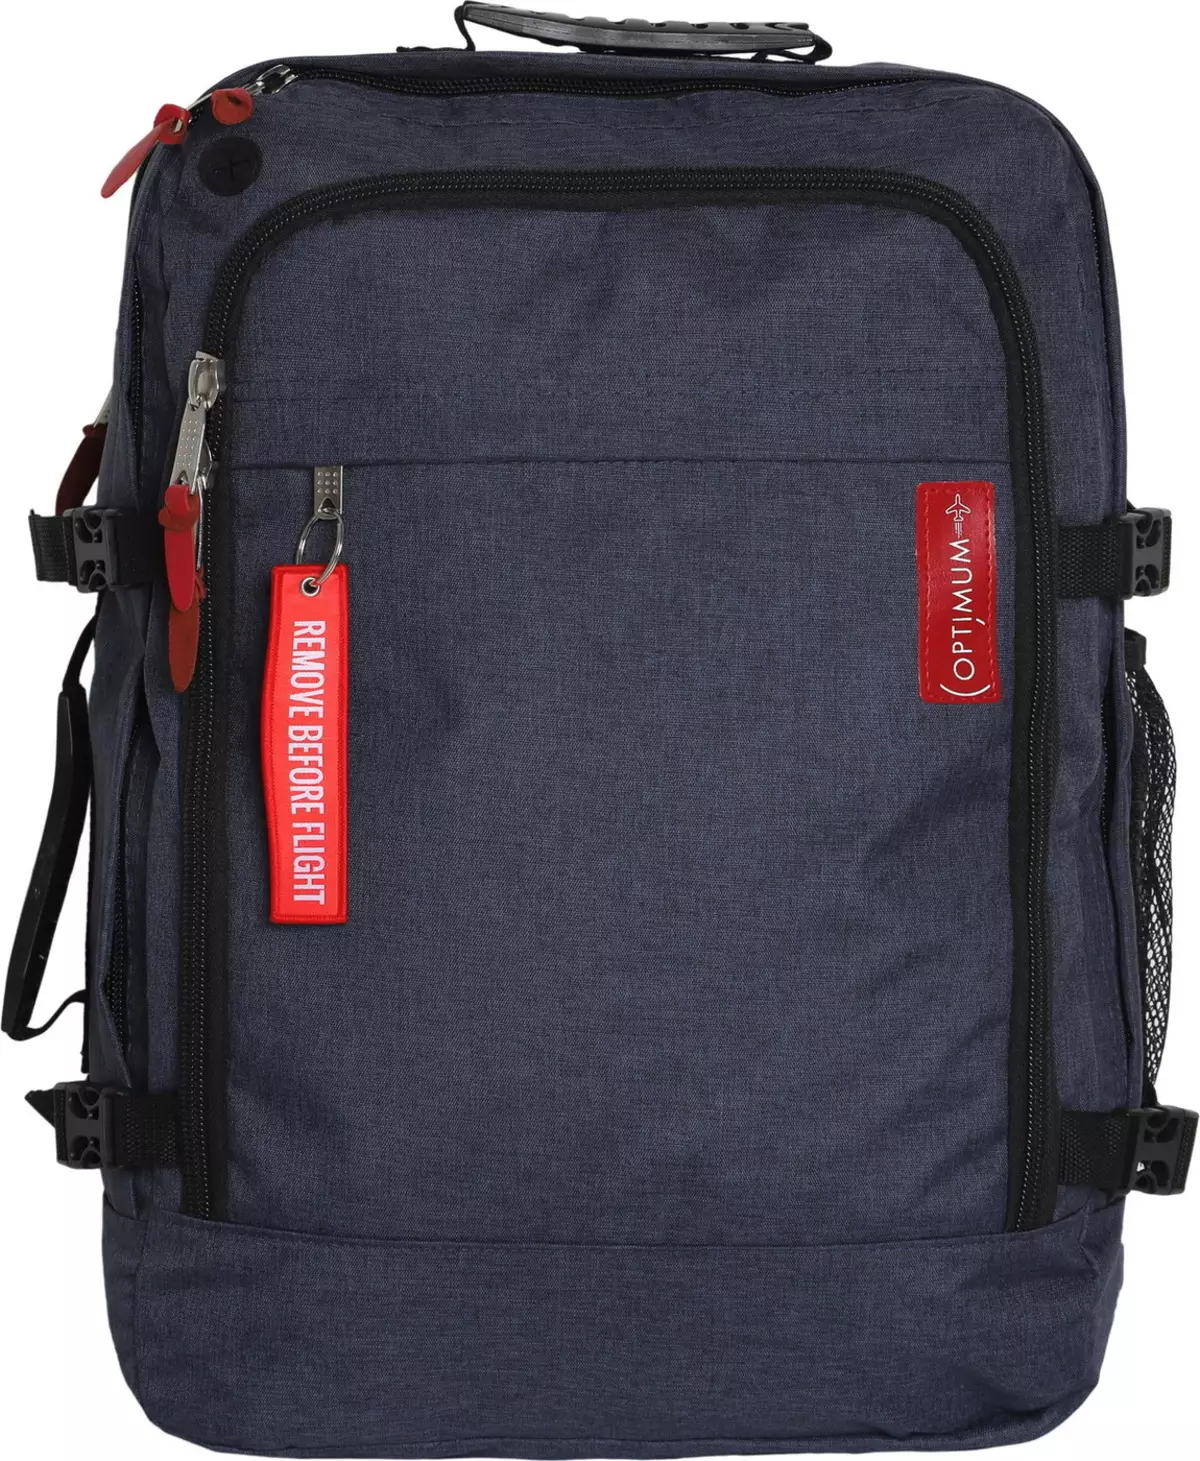 ხელის ჩანთა backpack: ითვლება backpack მოგზაურობის სახელმძღვანელო loop თვითმფრინავი? ზომები. რა შეიძლება დაიბადოს და რა უნდა გაიაროს ბარგის? 15346_10